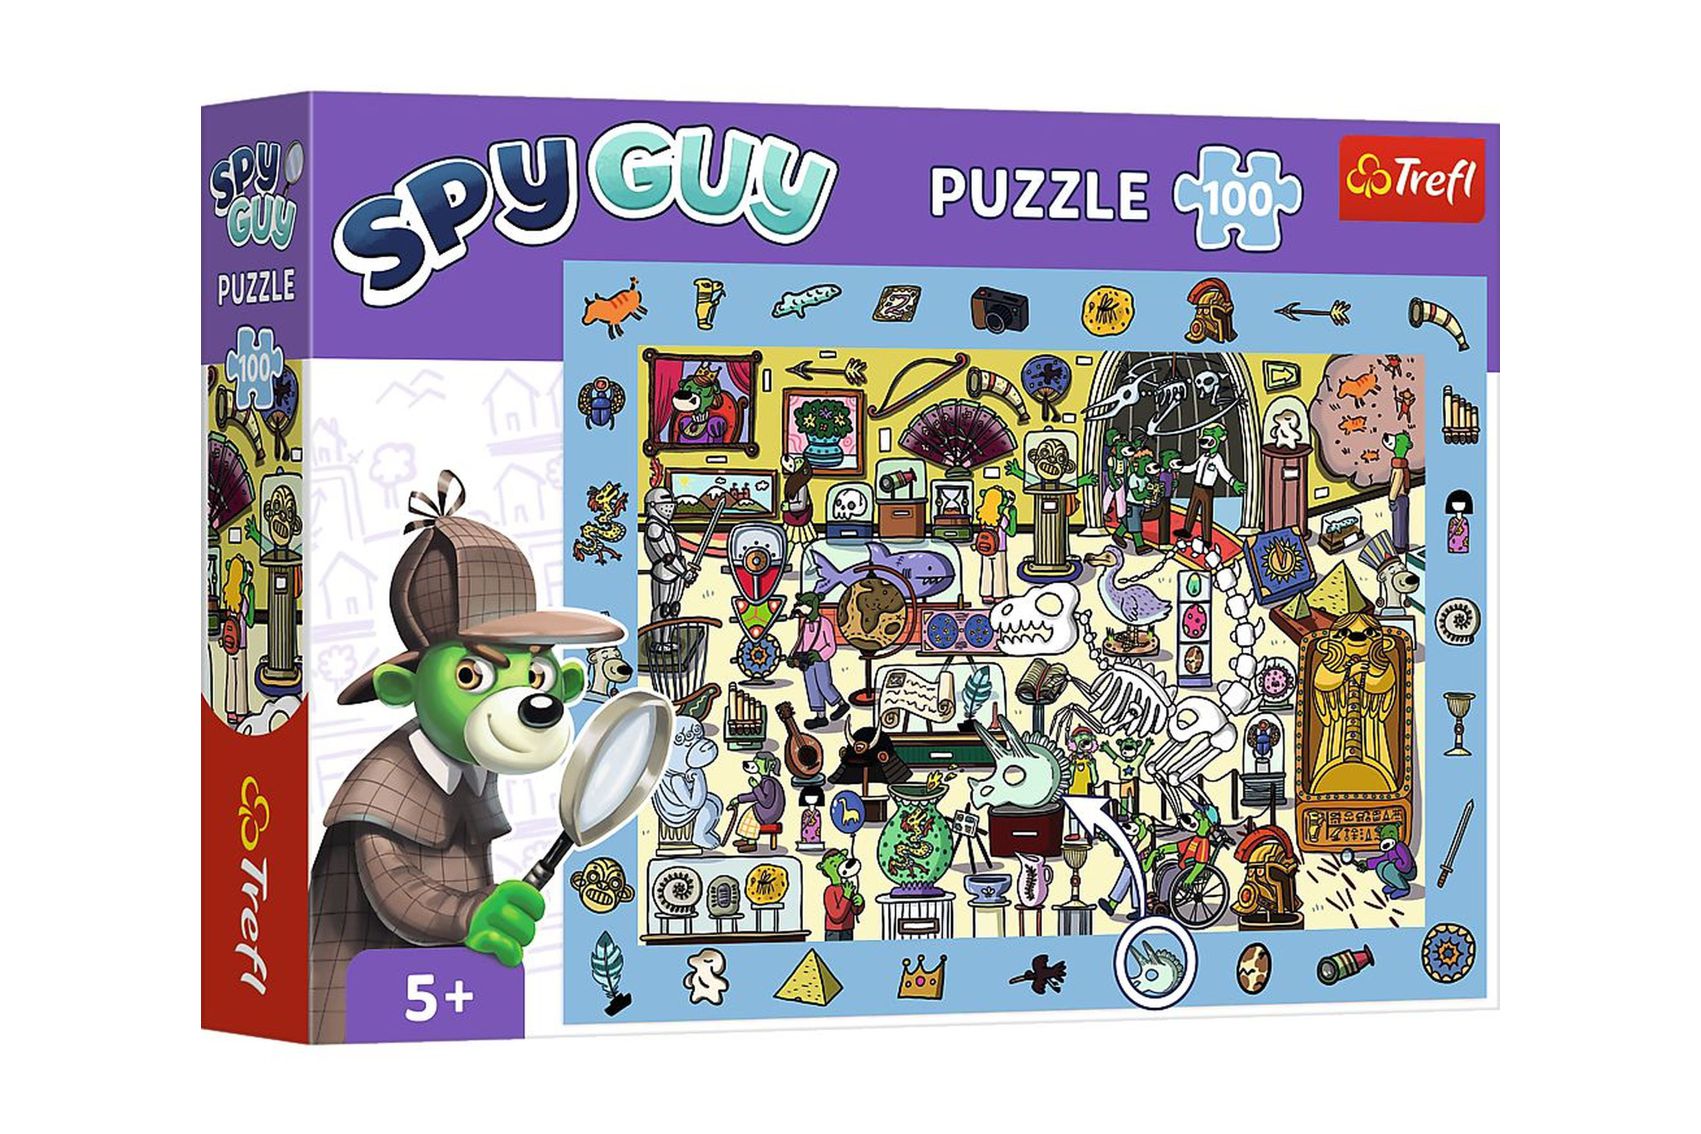 Trefl Puzzle Spy Guy - Muzeum 48x34cm 100 dílků v krabici 33x23x6cm